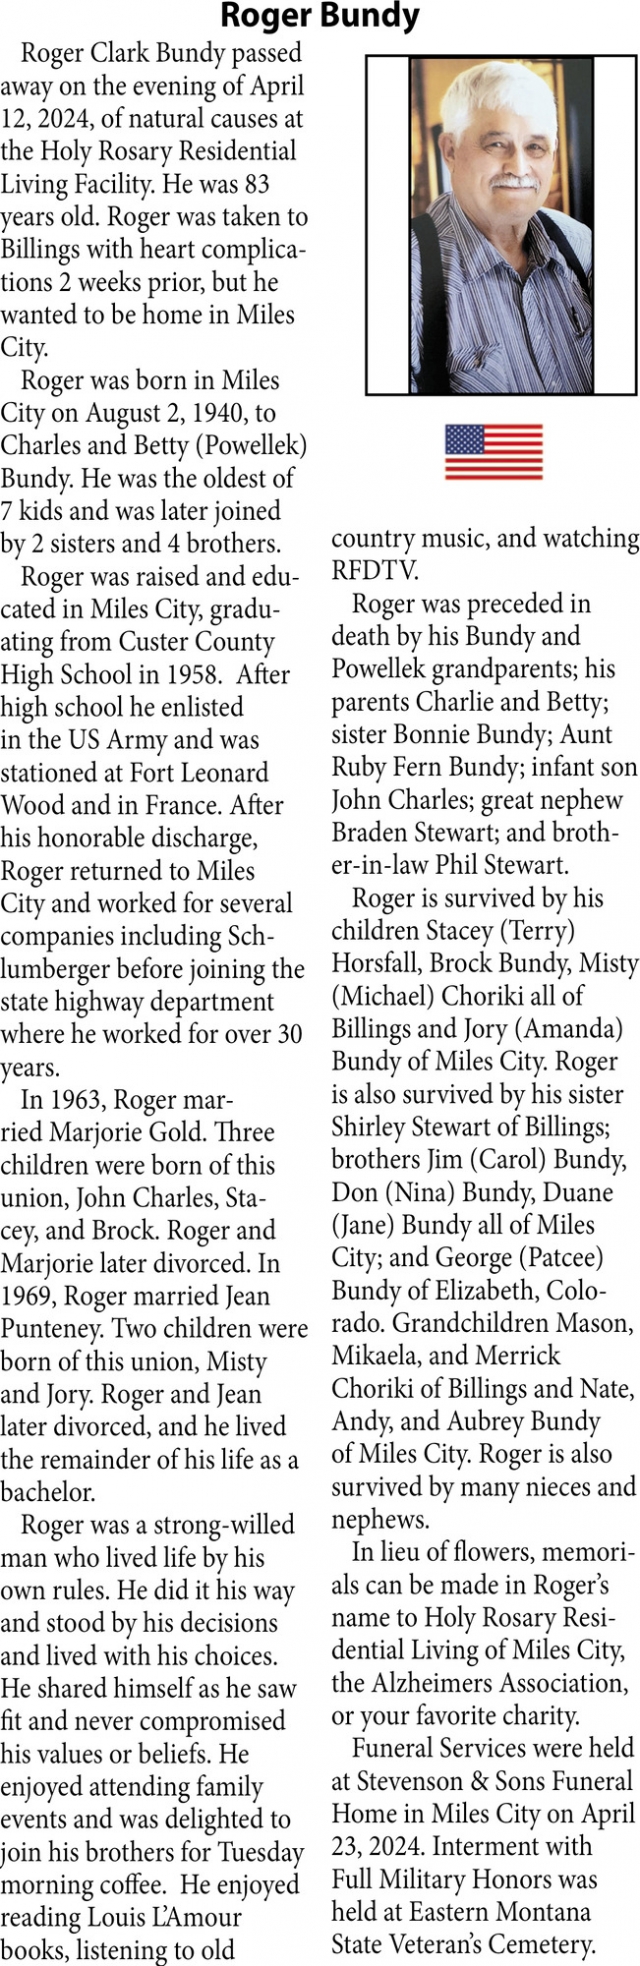 Roger Bundy, Obituaries, Glendive, MT